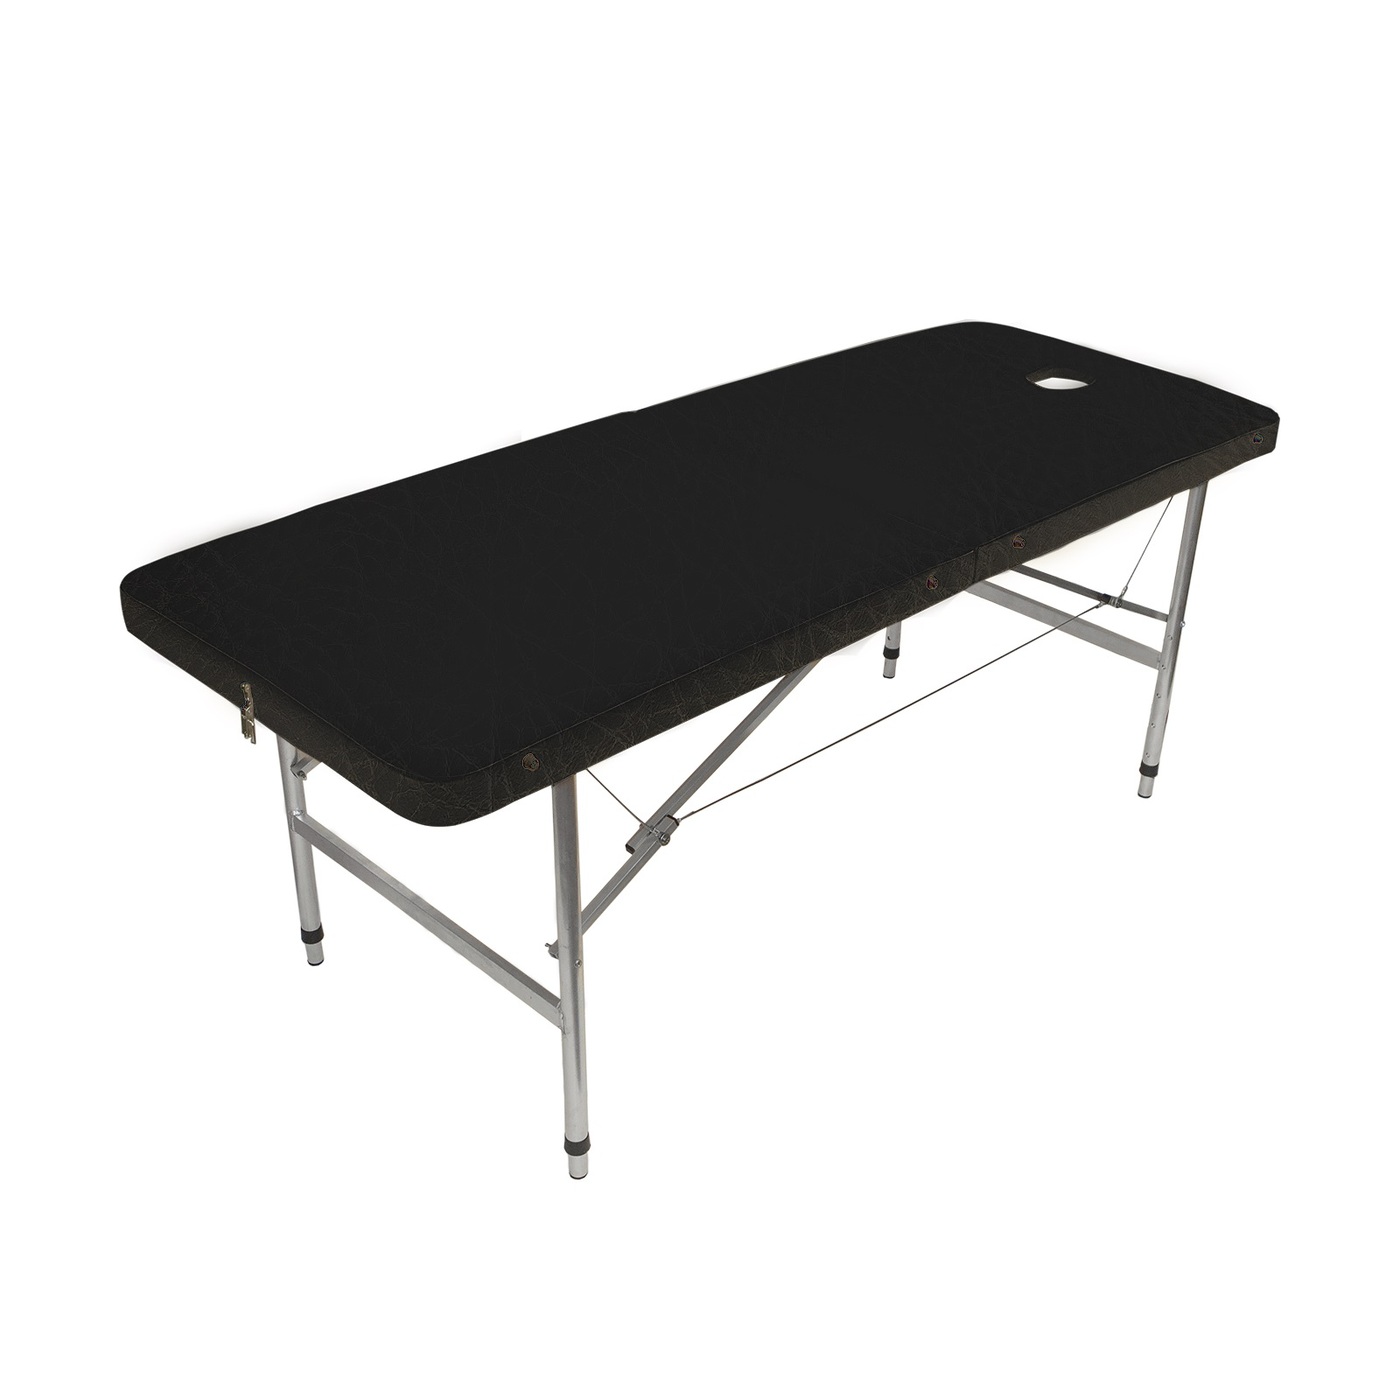 Массажный стол Your Stol регулировка от 70 до 87 см,складной 180х60, черный